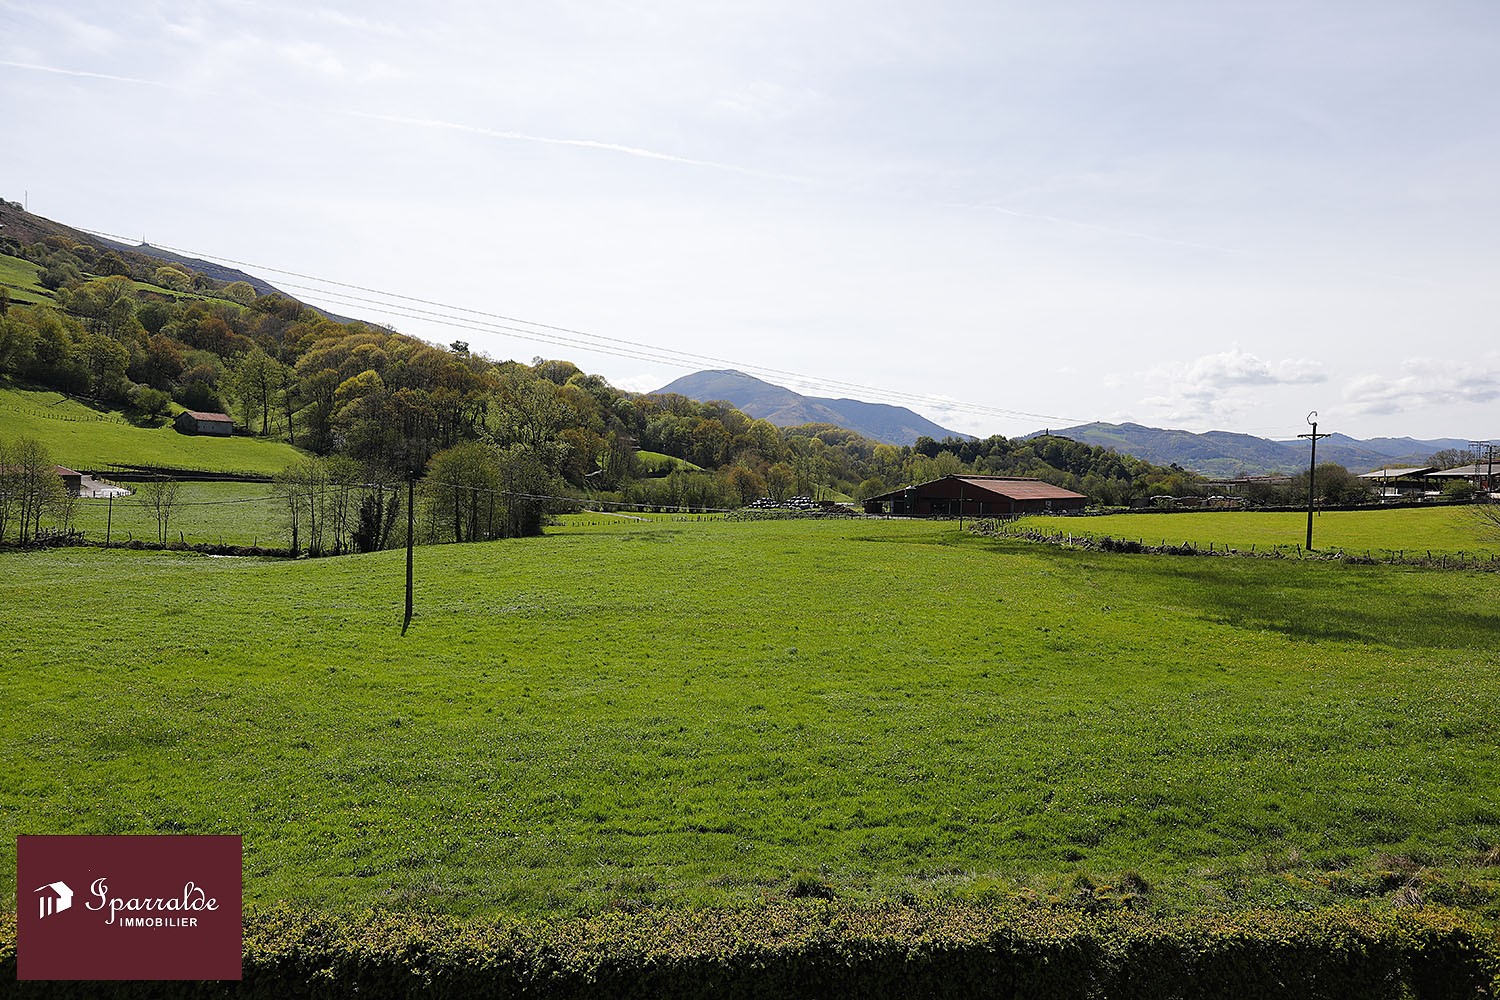 Magnifique  Maison au coeur du Pays Basque avec 10.000m2 de terrain.